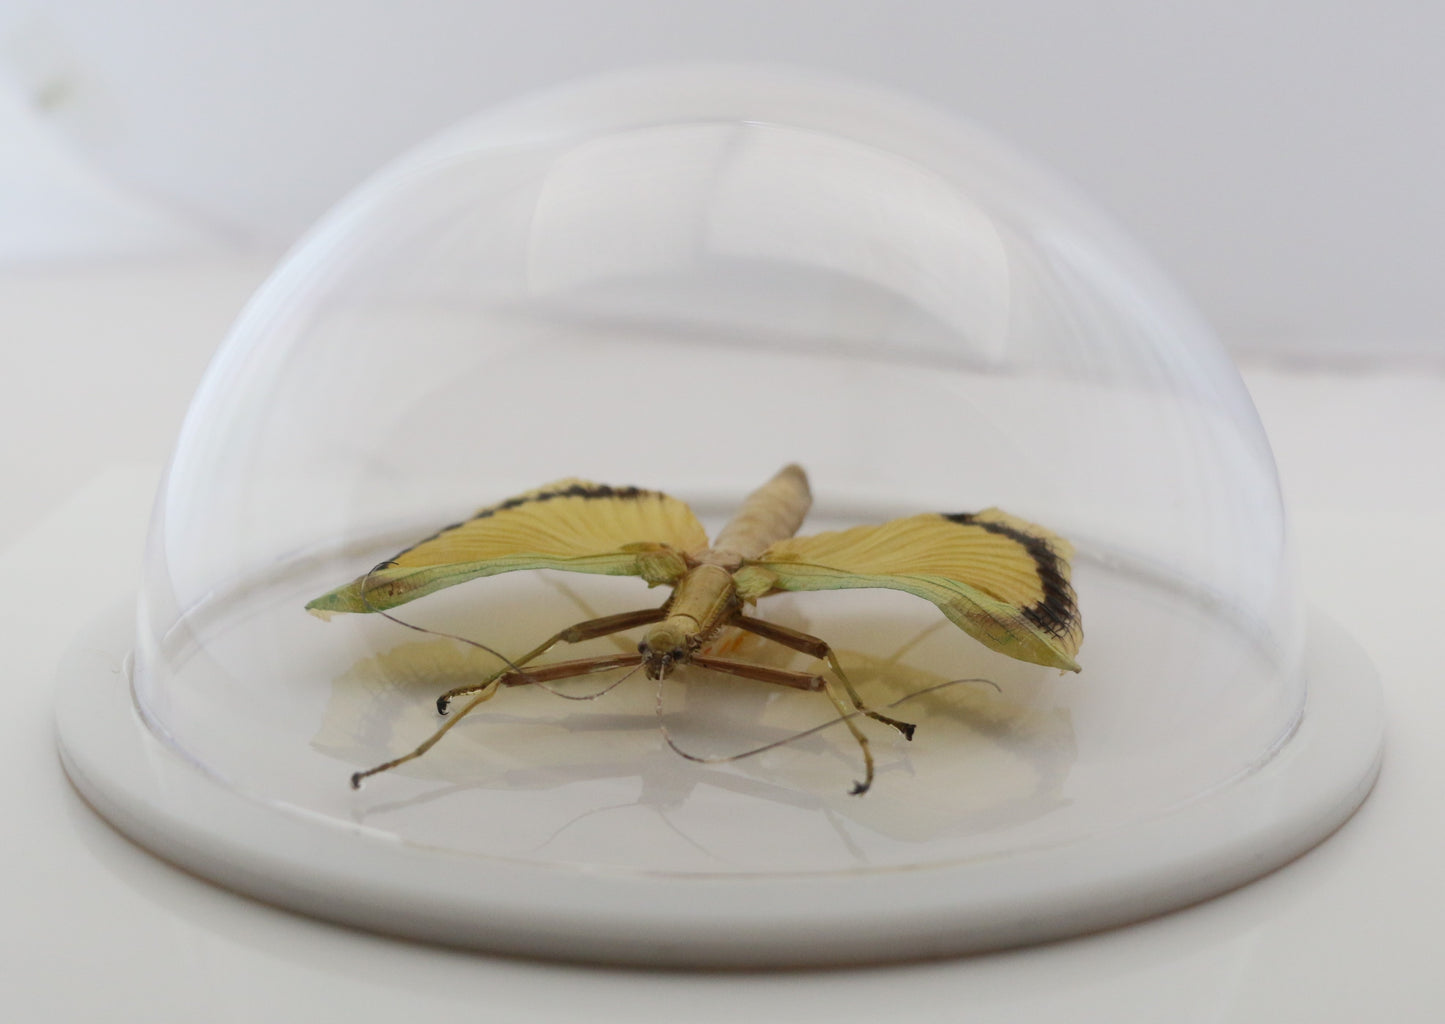 760460 - Dome Displays - Ex. Large (156mm) - White - Yellow Wing Walking Stick (Tagesoidea nigrofasciata)